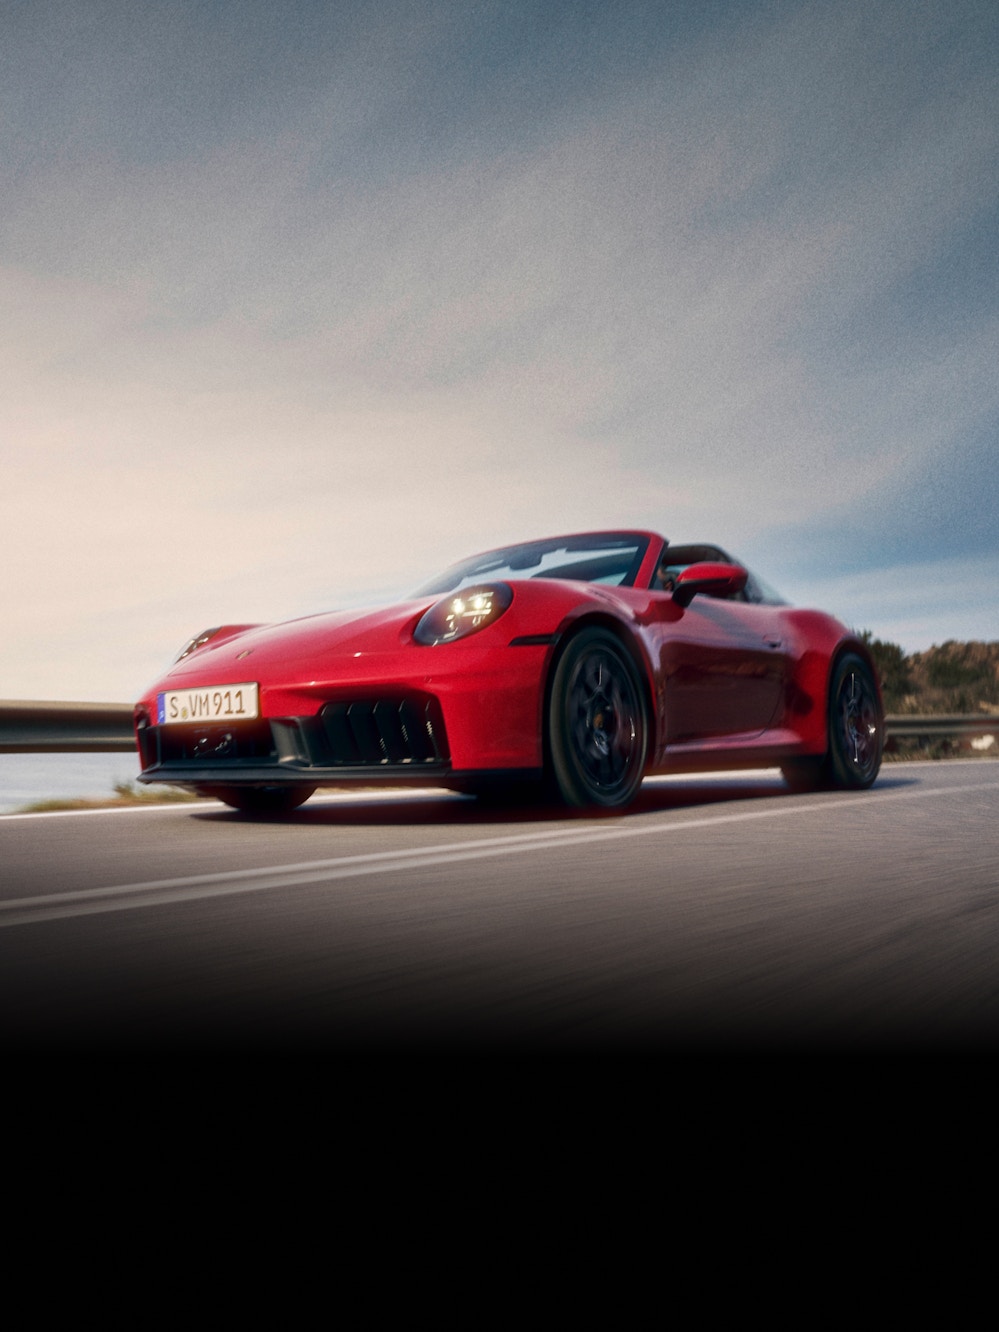 Ein roter Porsche 911 fährt auf einer Straße mit Natur im Hintergrund.